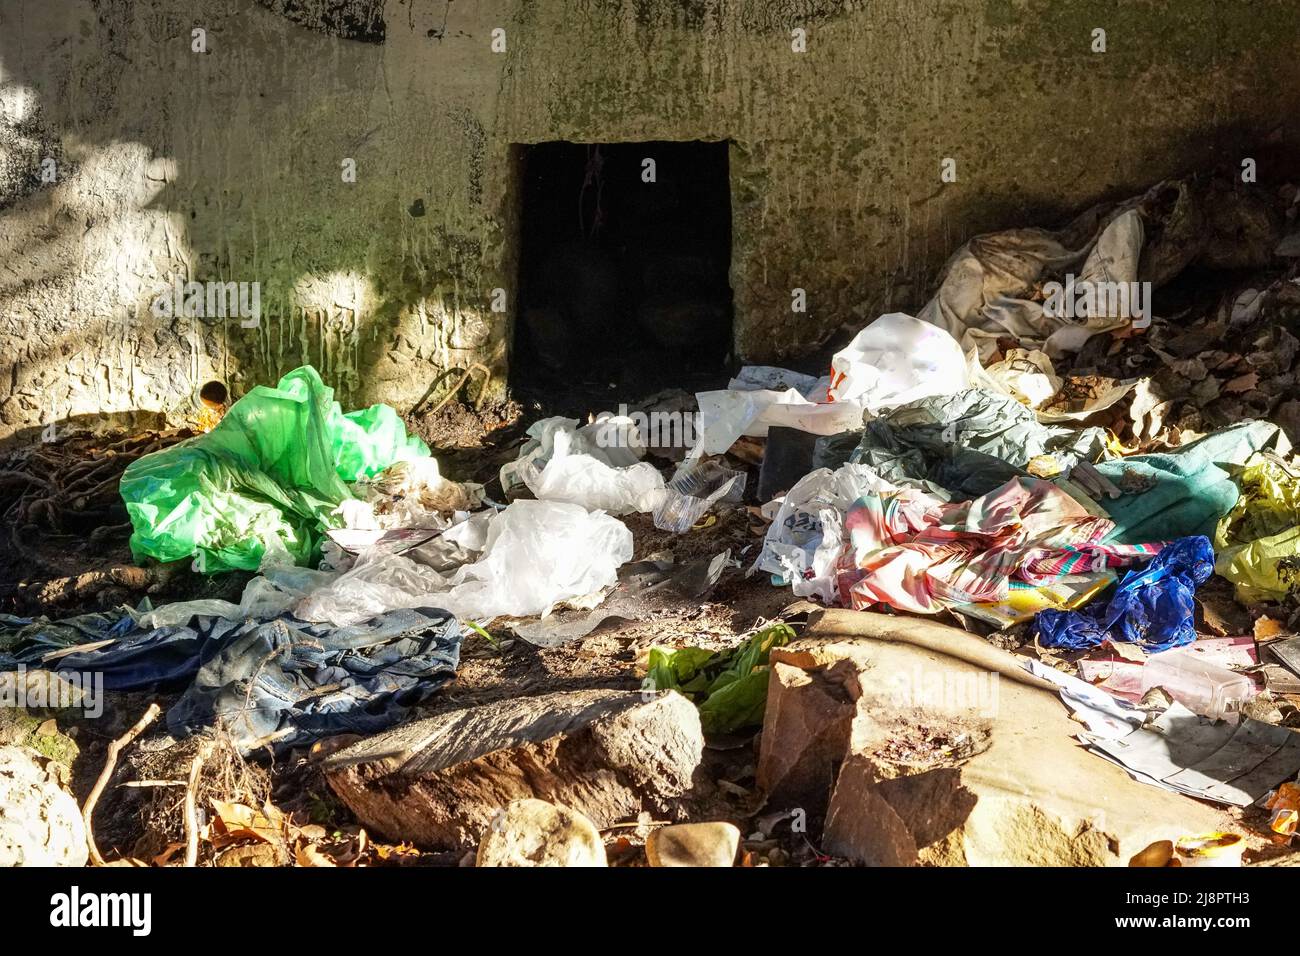 Spazzatura, rifiuti, rifiuti sulle rive di un canale fluviale a Città del Capo, Sud Africa concetto di danni ambientali alla natura e l'inquinamento Foto Stock